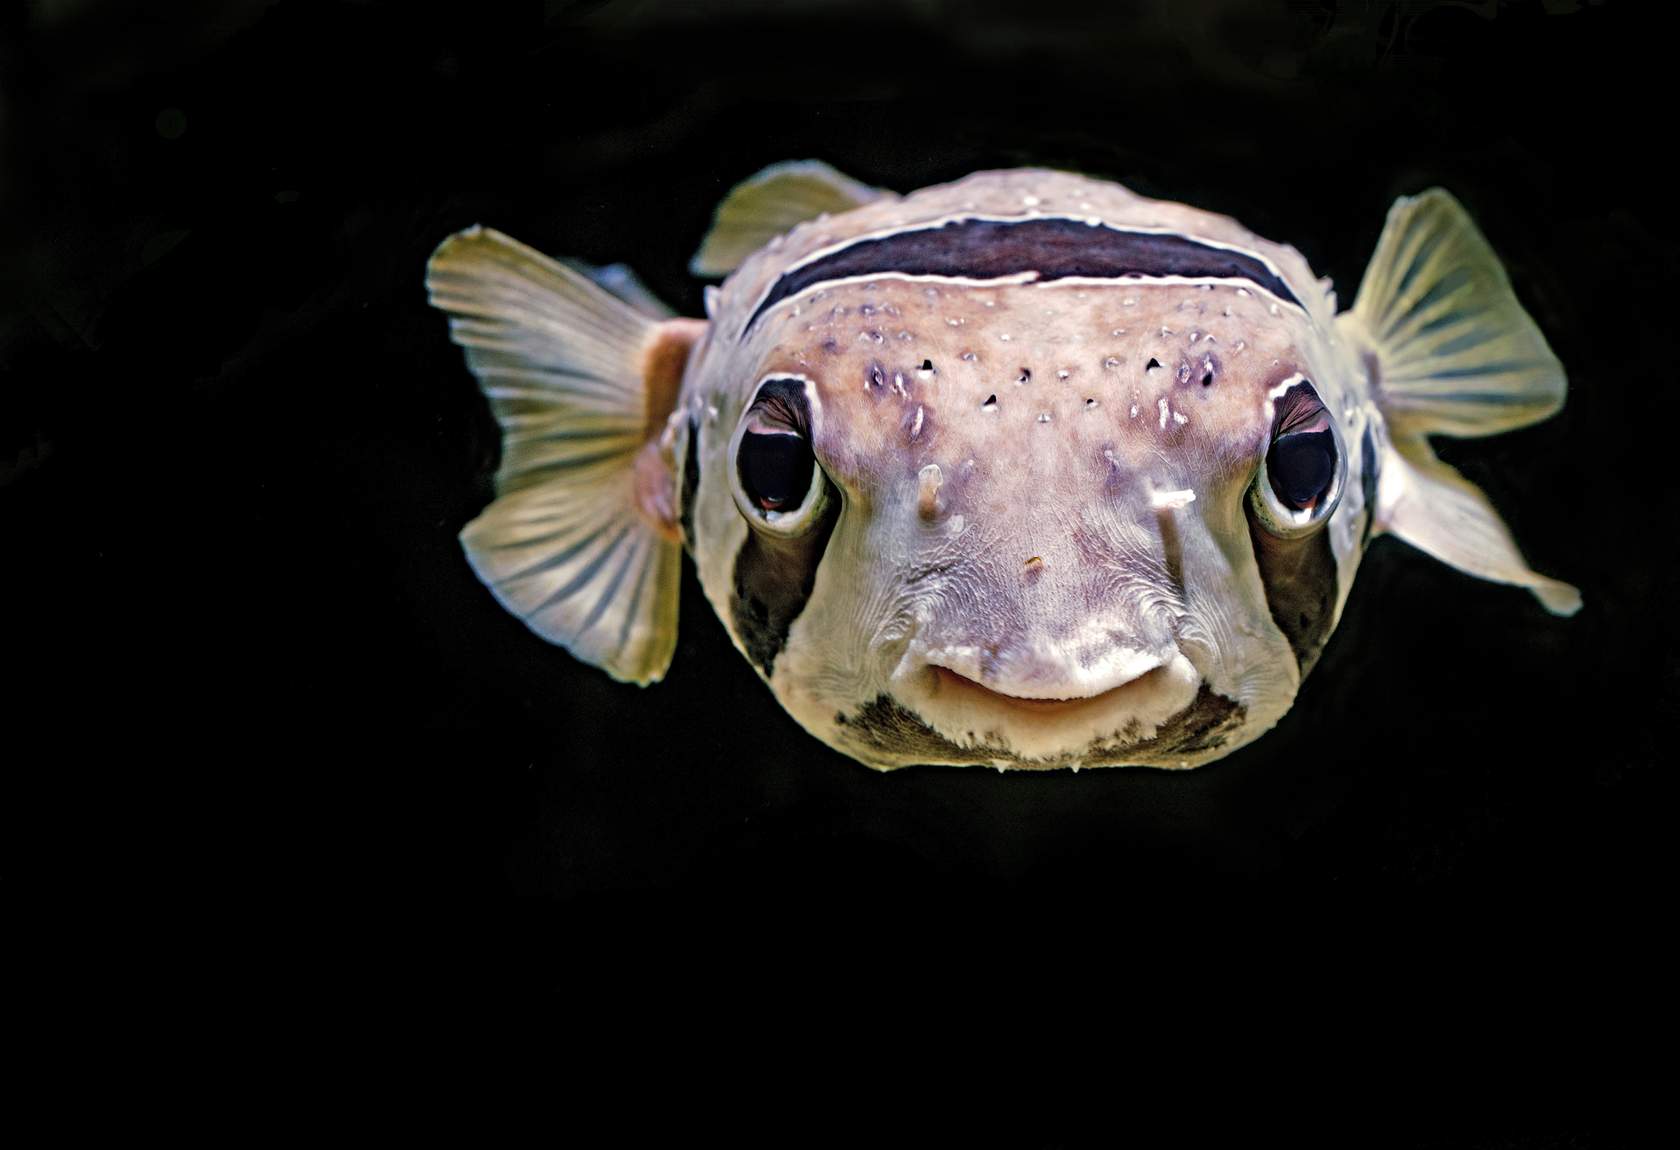 El pez globo (fugu) es un manjar en algunos países, pero si no se prepara correctamente puede provocar parálisis e incluso la muerte.